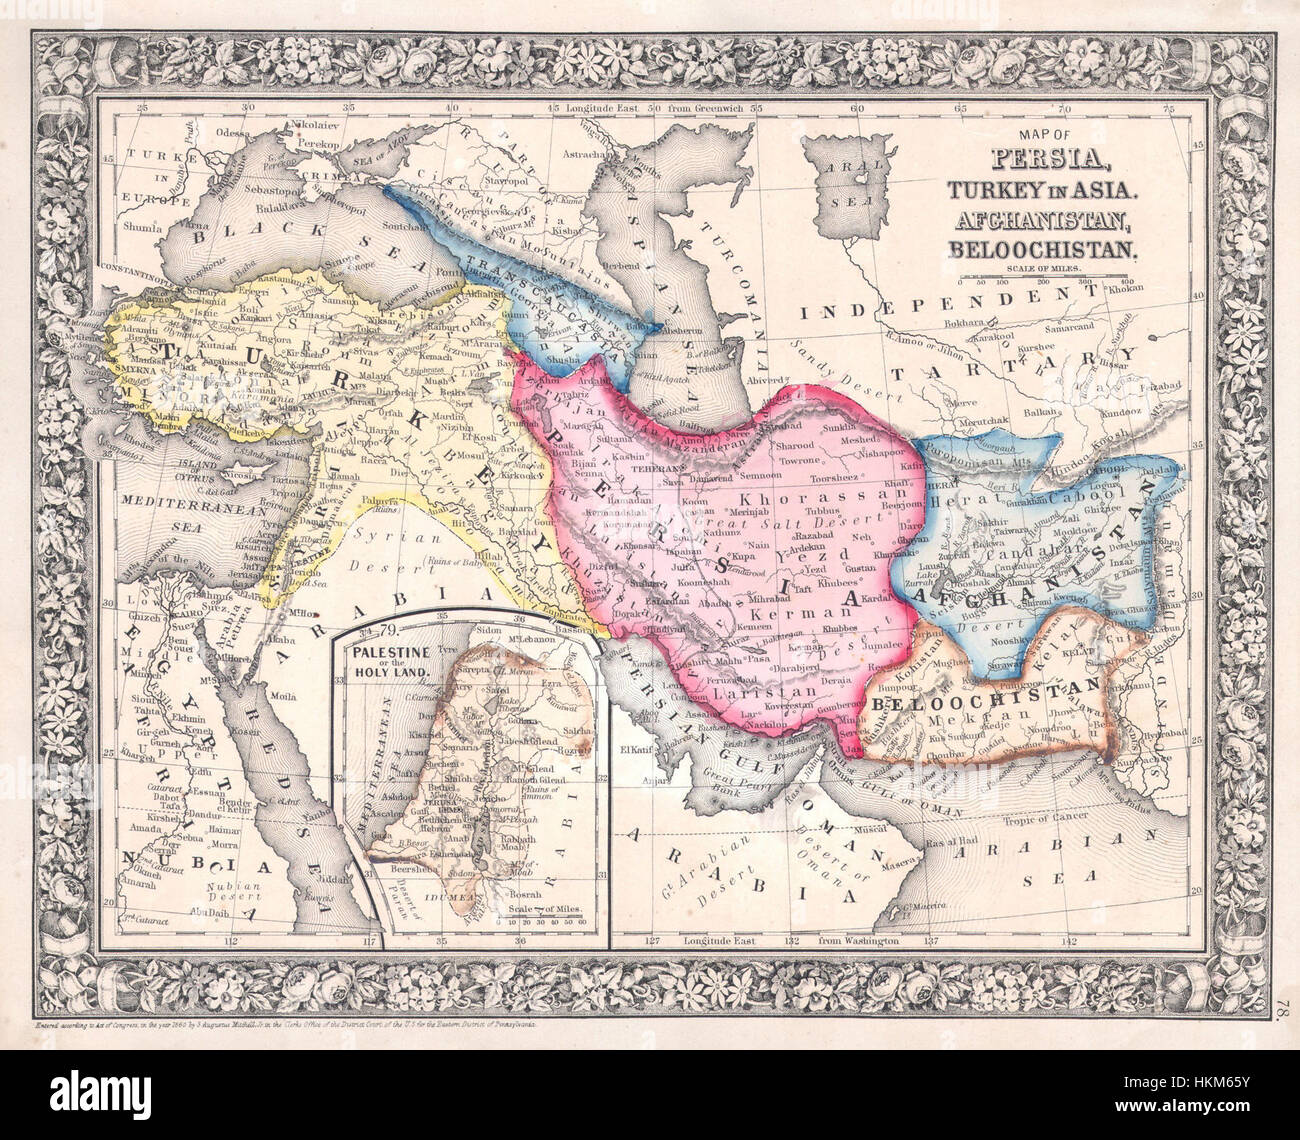 1864 Mitchell-Karte von Persien, der Türkei und Afghanistan (Iran, Irak) - Geographicus - Persien-Mitchell-1864 Stockfoto